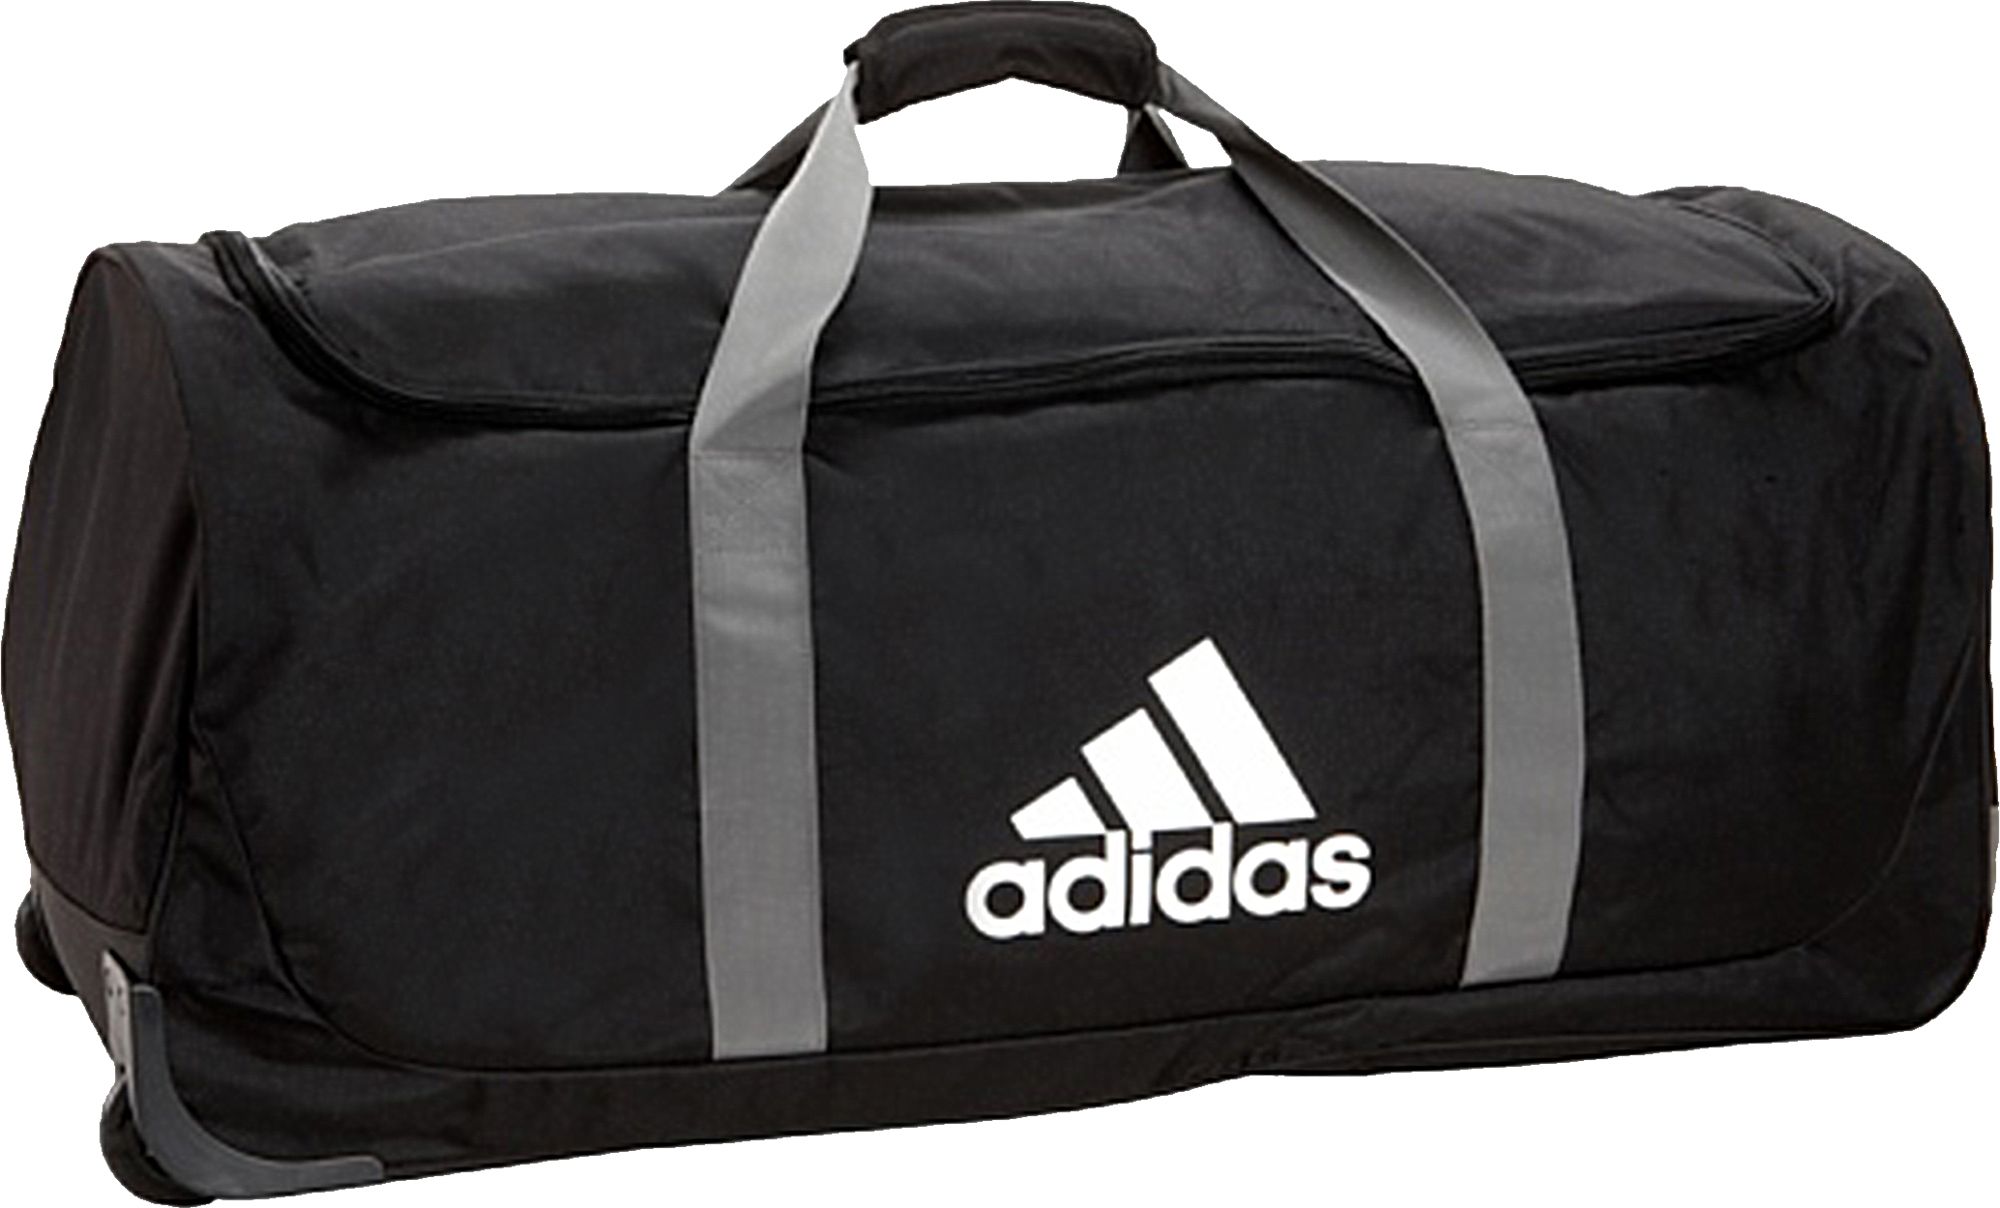 adidas wheeled backpack